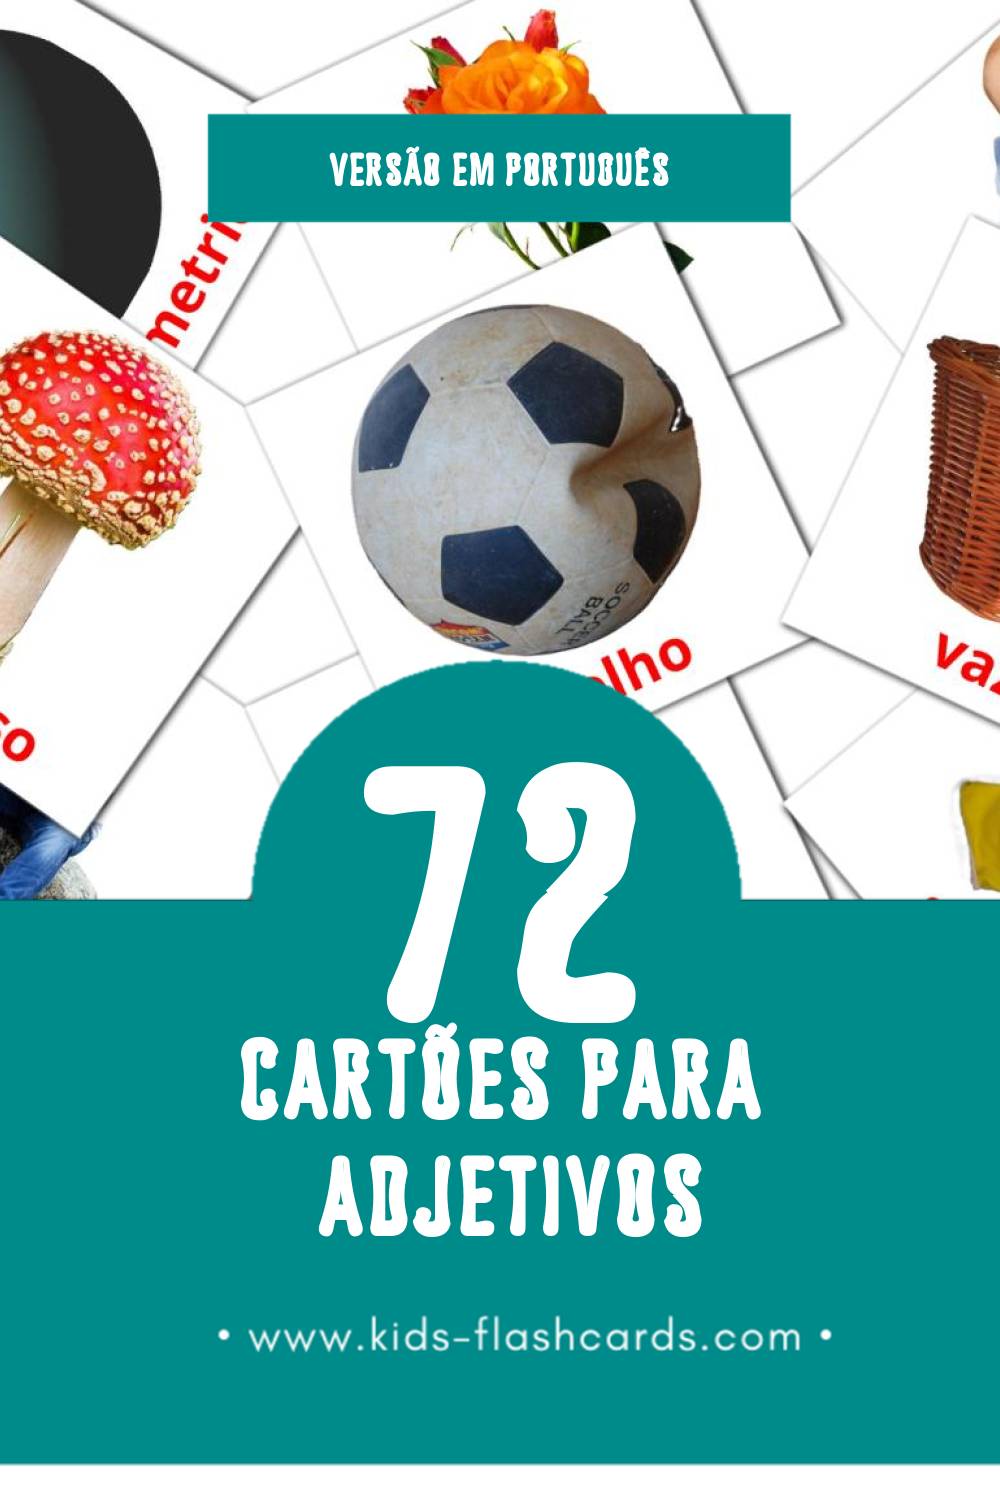 Flashcards de Adjetivos Visuais para Toddlers (74 cartões em Português)